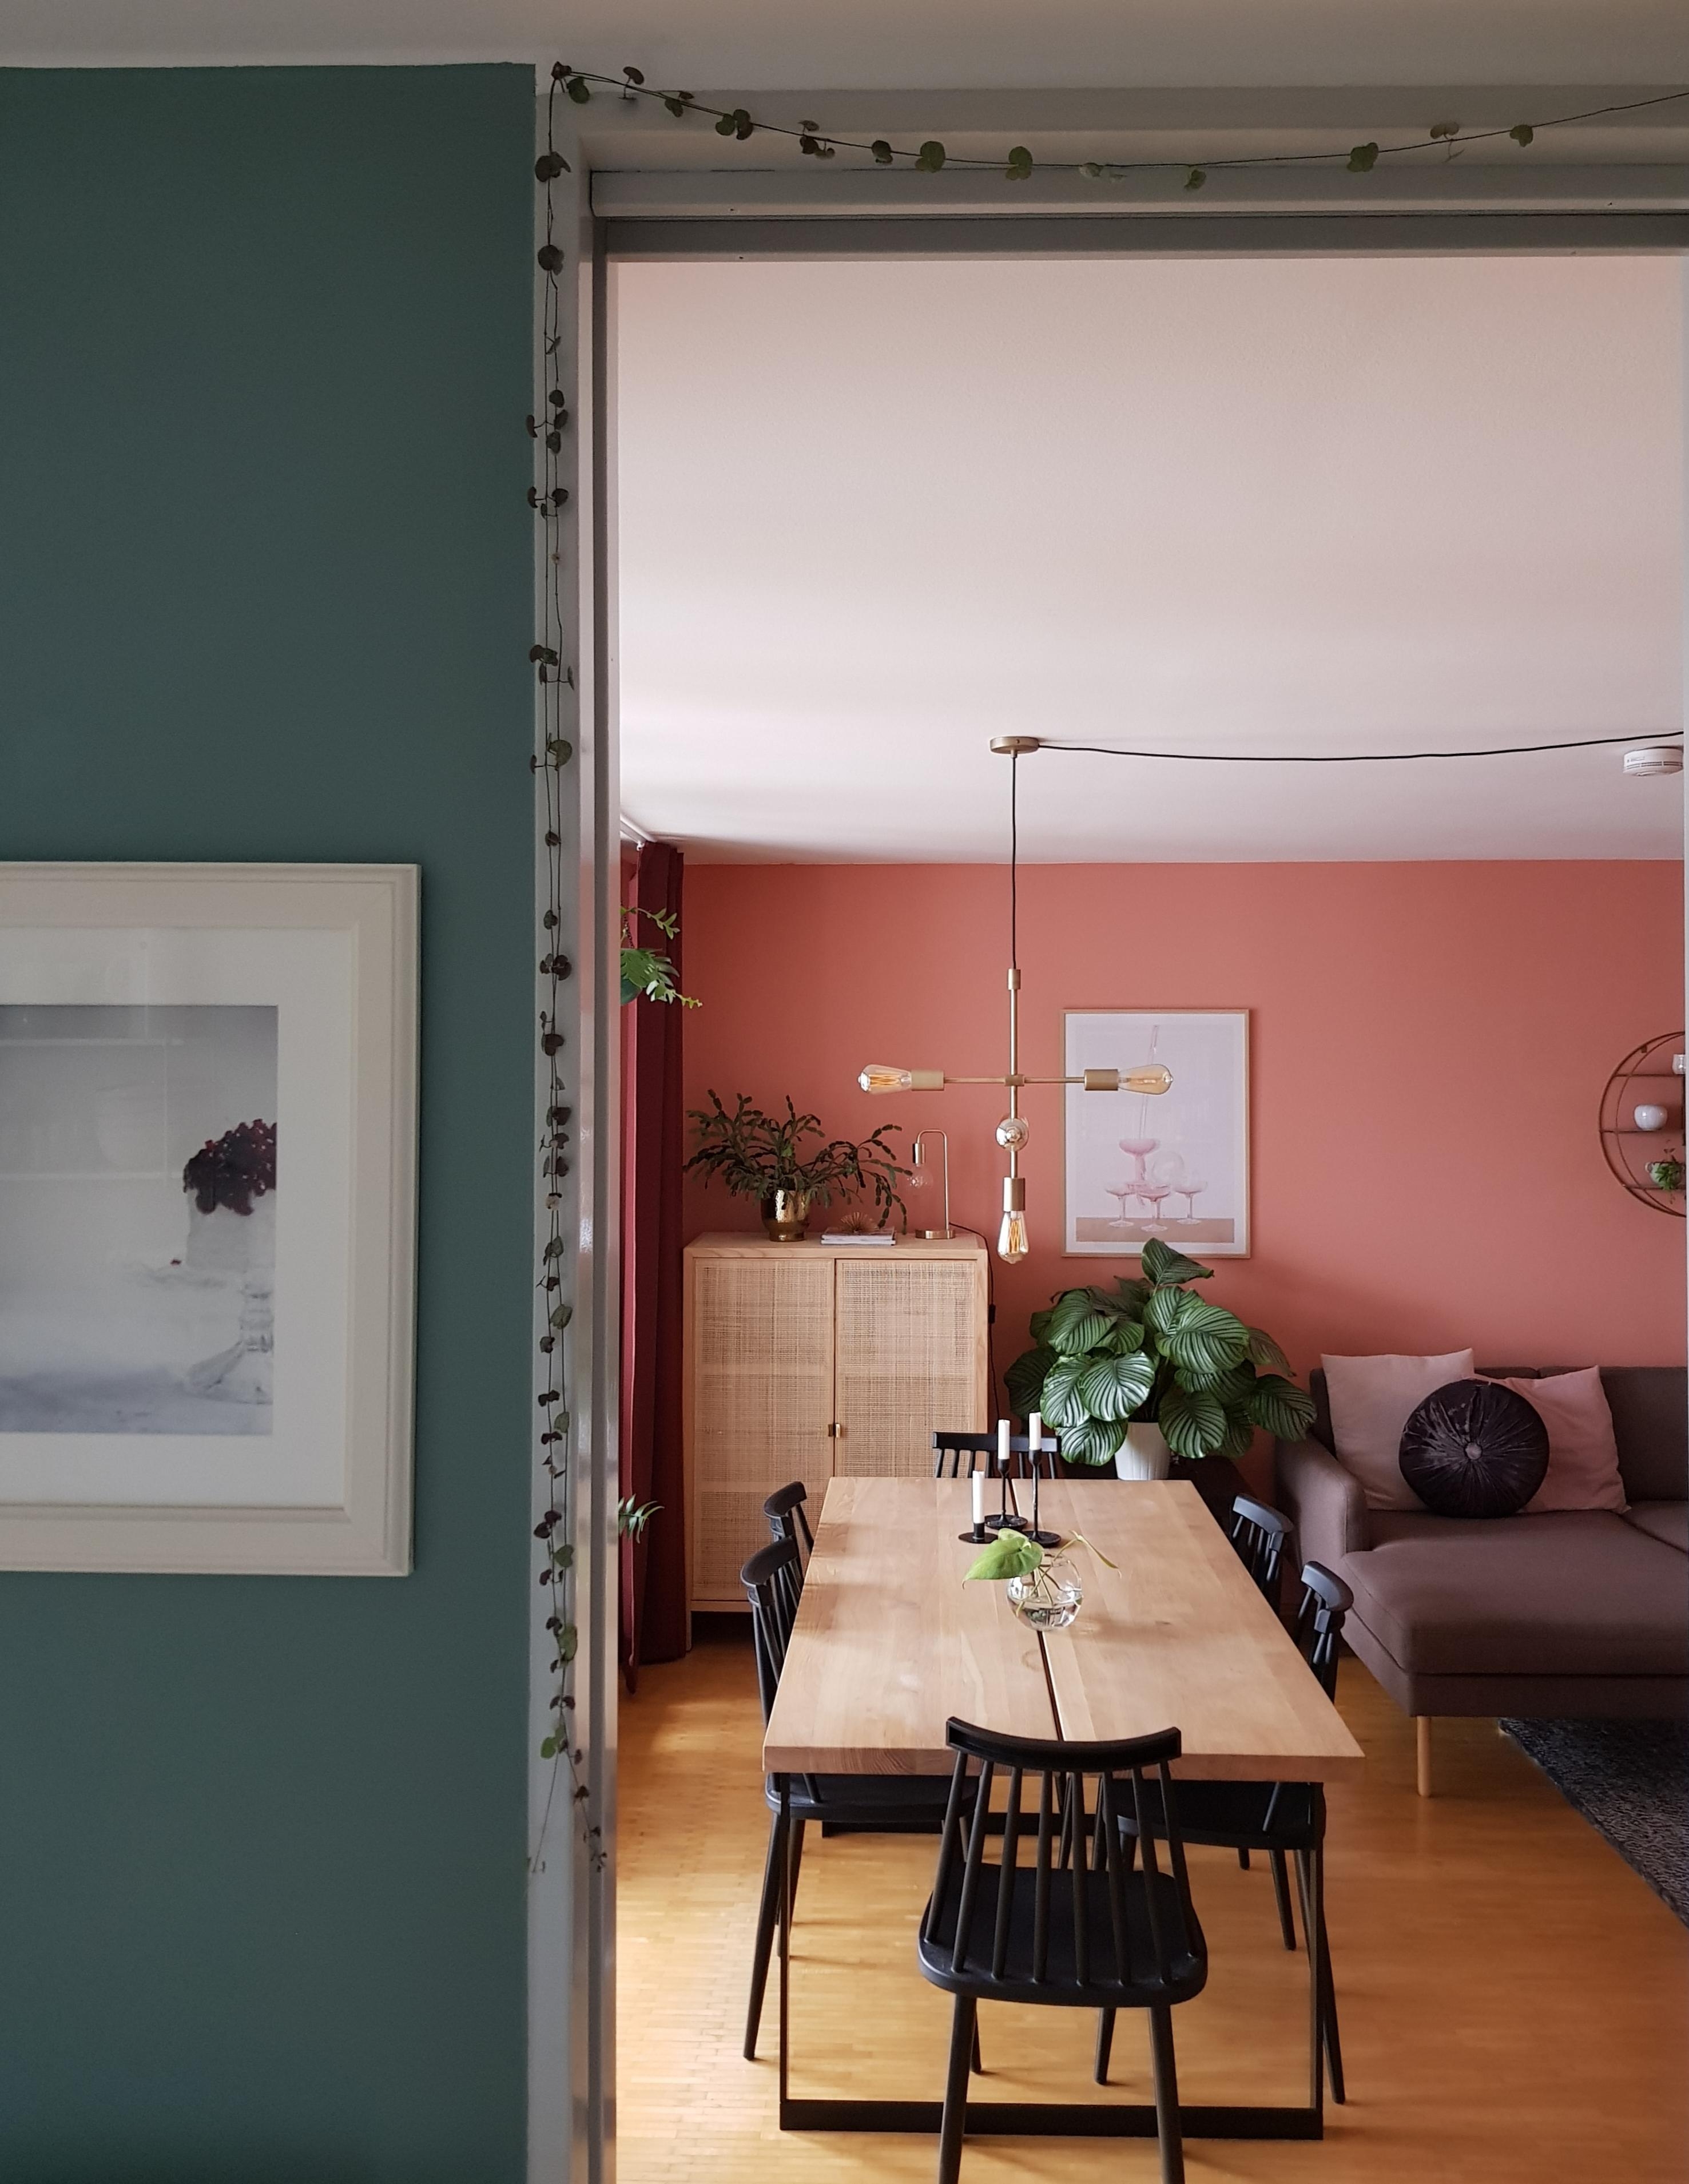 Der Kiwi-Knöterich wurde einfach zu lang, jetzt darf er um die Tür herum wachsen. 😊 #wohnzimmer #pflanzen #wandfarbe